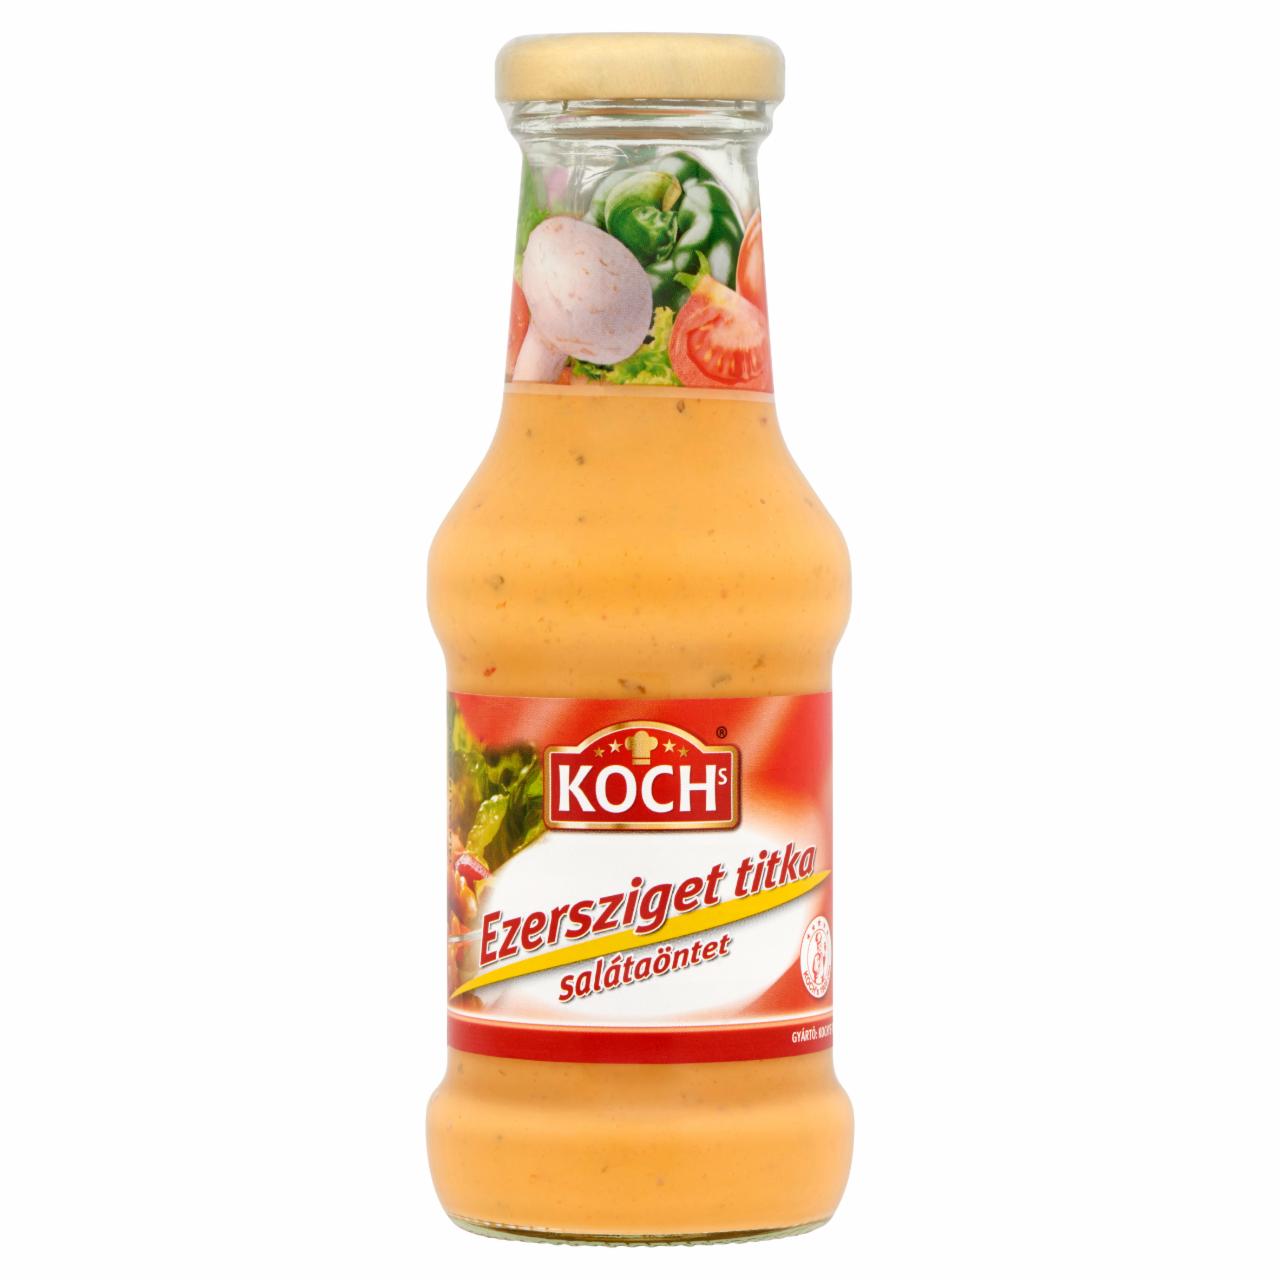 Képek - Koch's Ezersziget Titka salátaöntet 250 ml